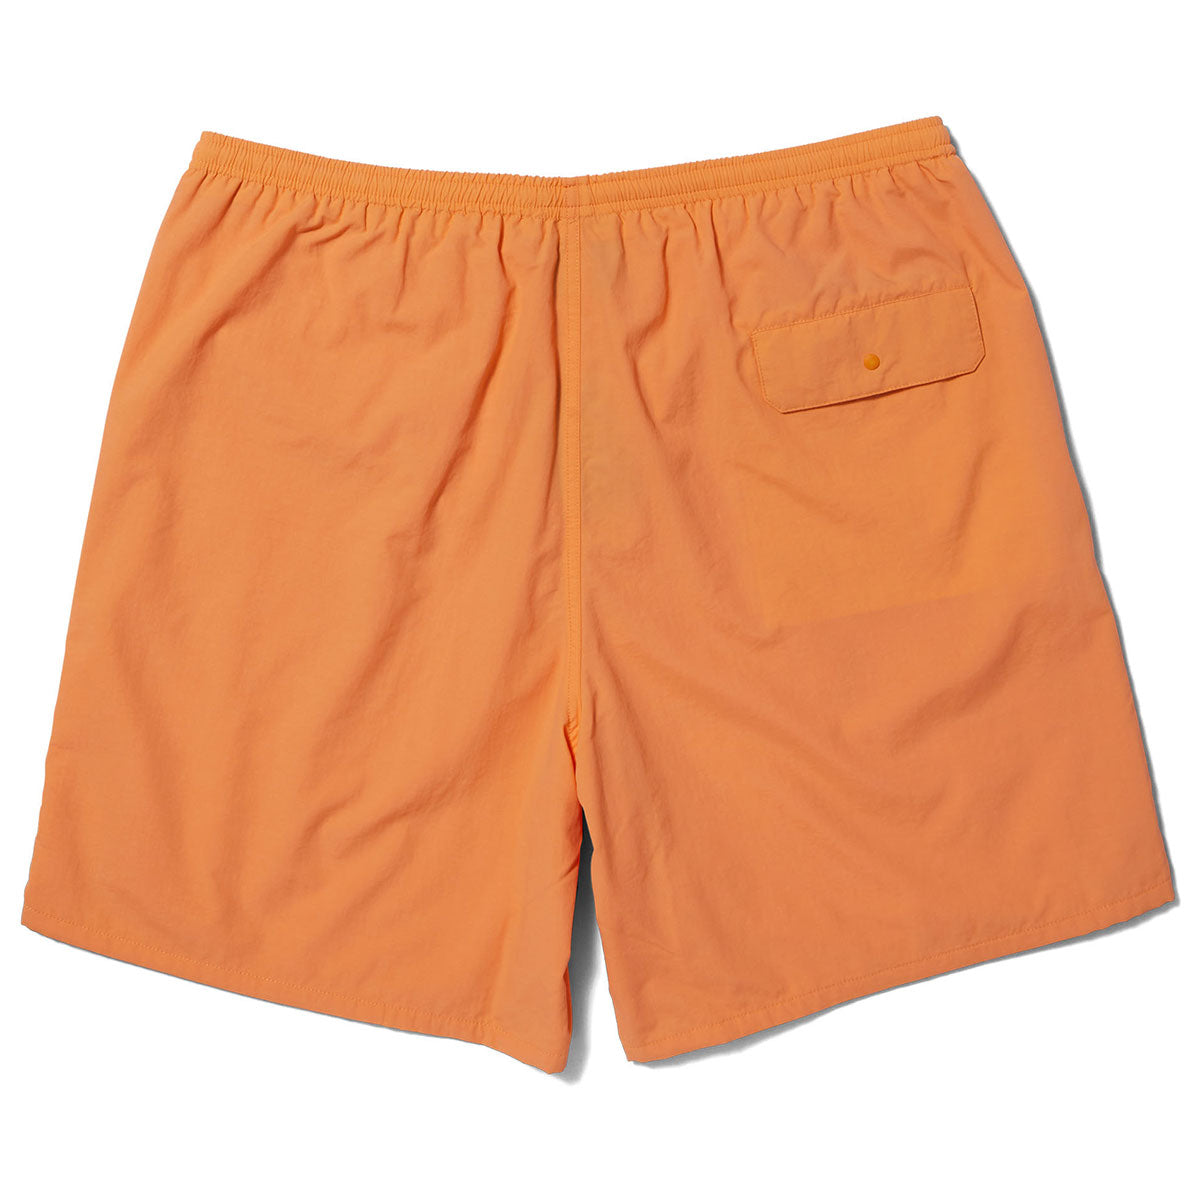 HUF Reservoir Dwr Easy Shorts - Tangerine image 2